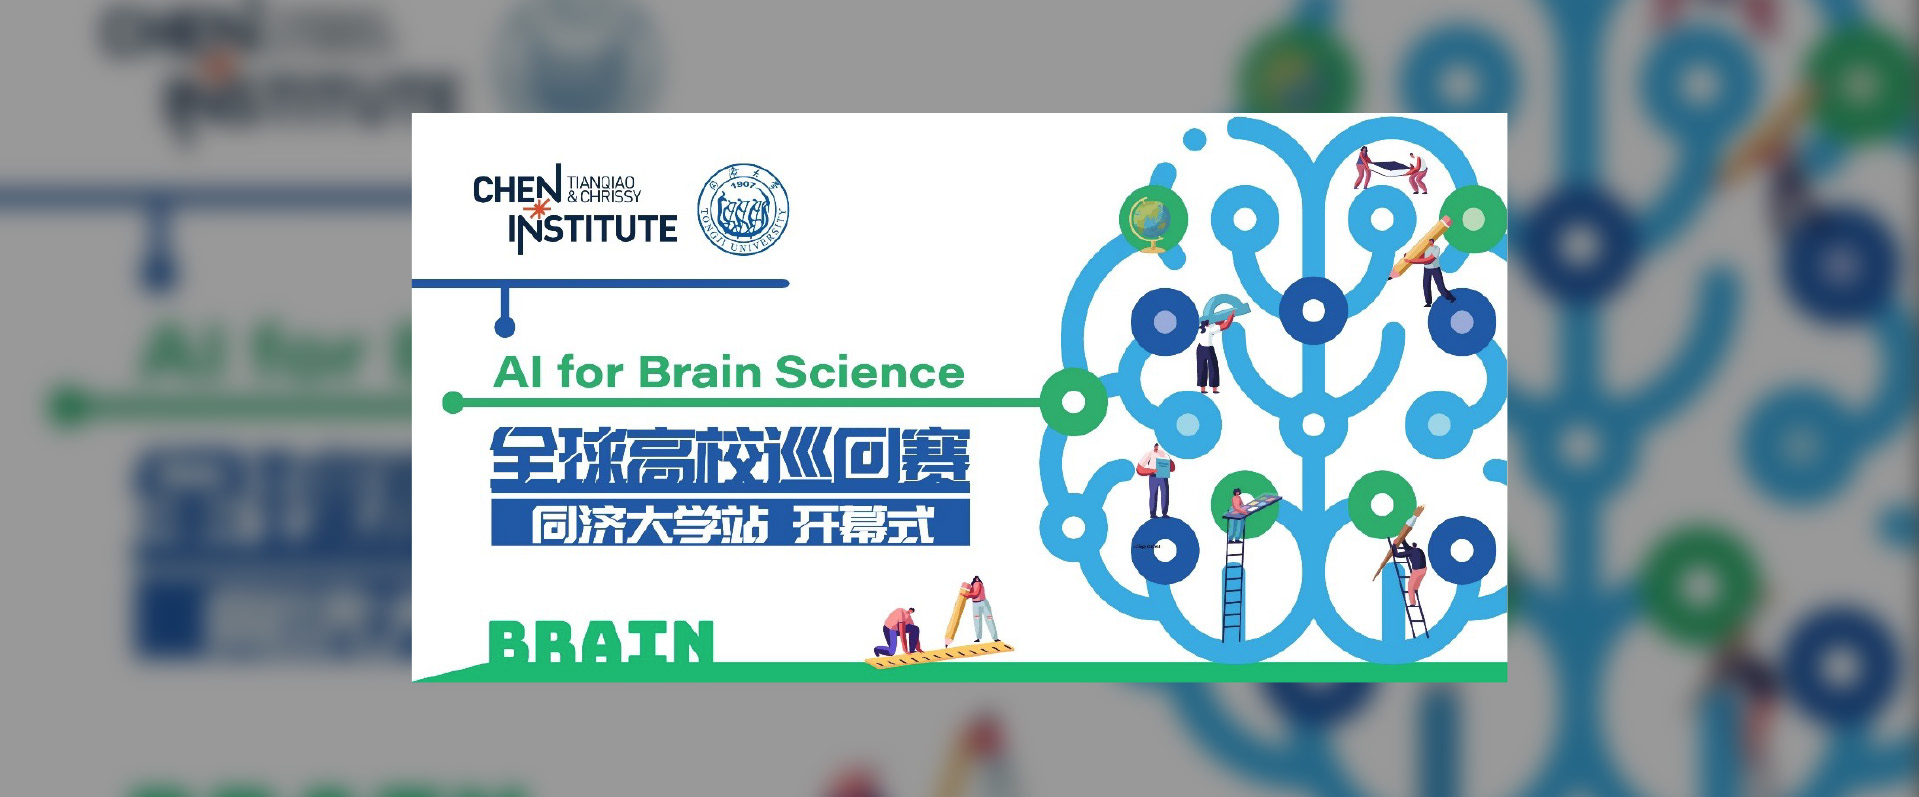 天桥脑科学研究院举办全球高校巡回赛推动 “AI+脑科学” – 首站同济大学今日开赛